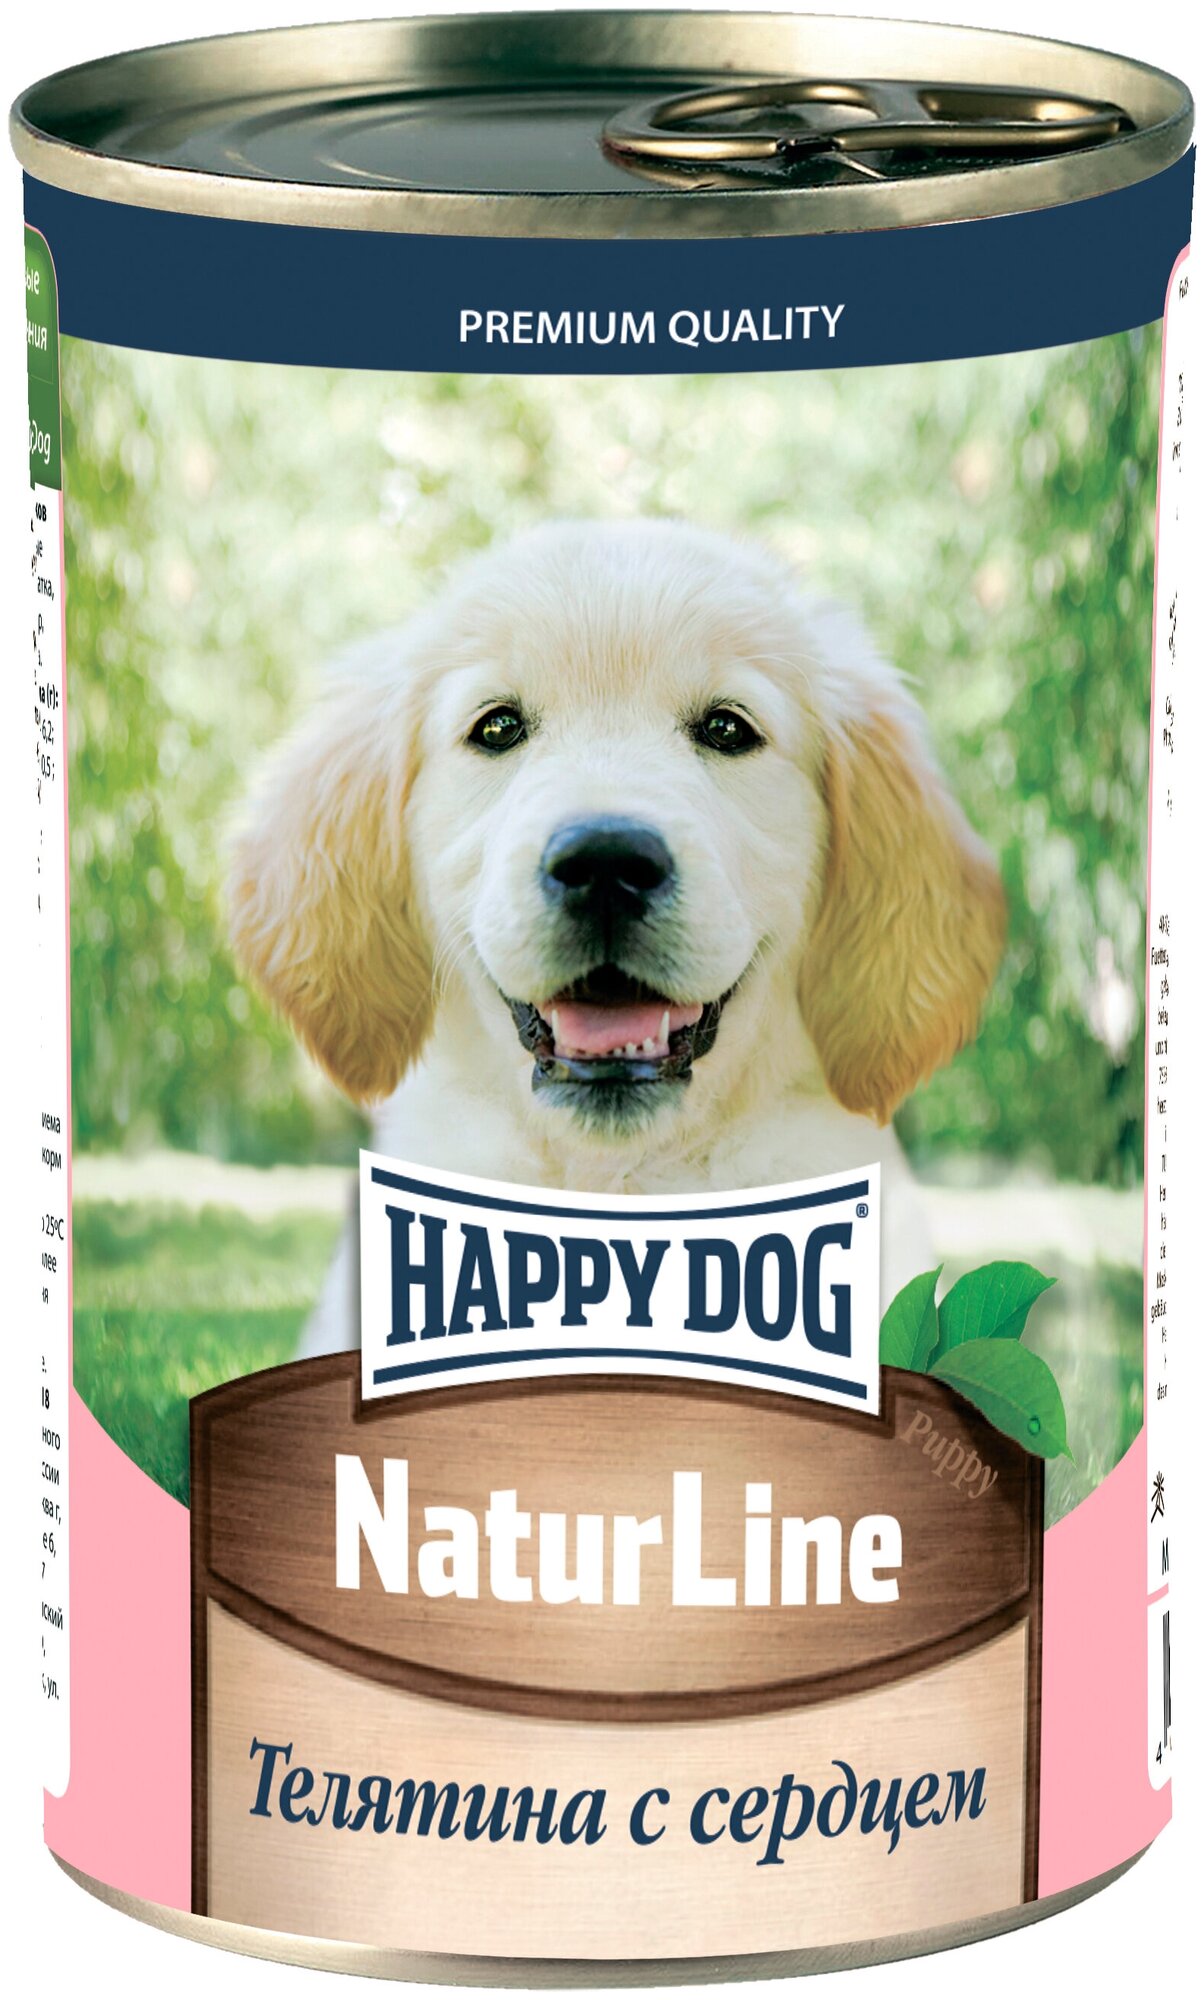 HAPPY DOG NATUR LINE для щенков с телятиной и сердцем (410 гр х 12 шт)